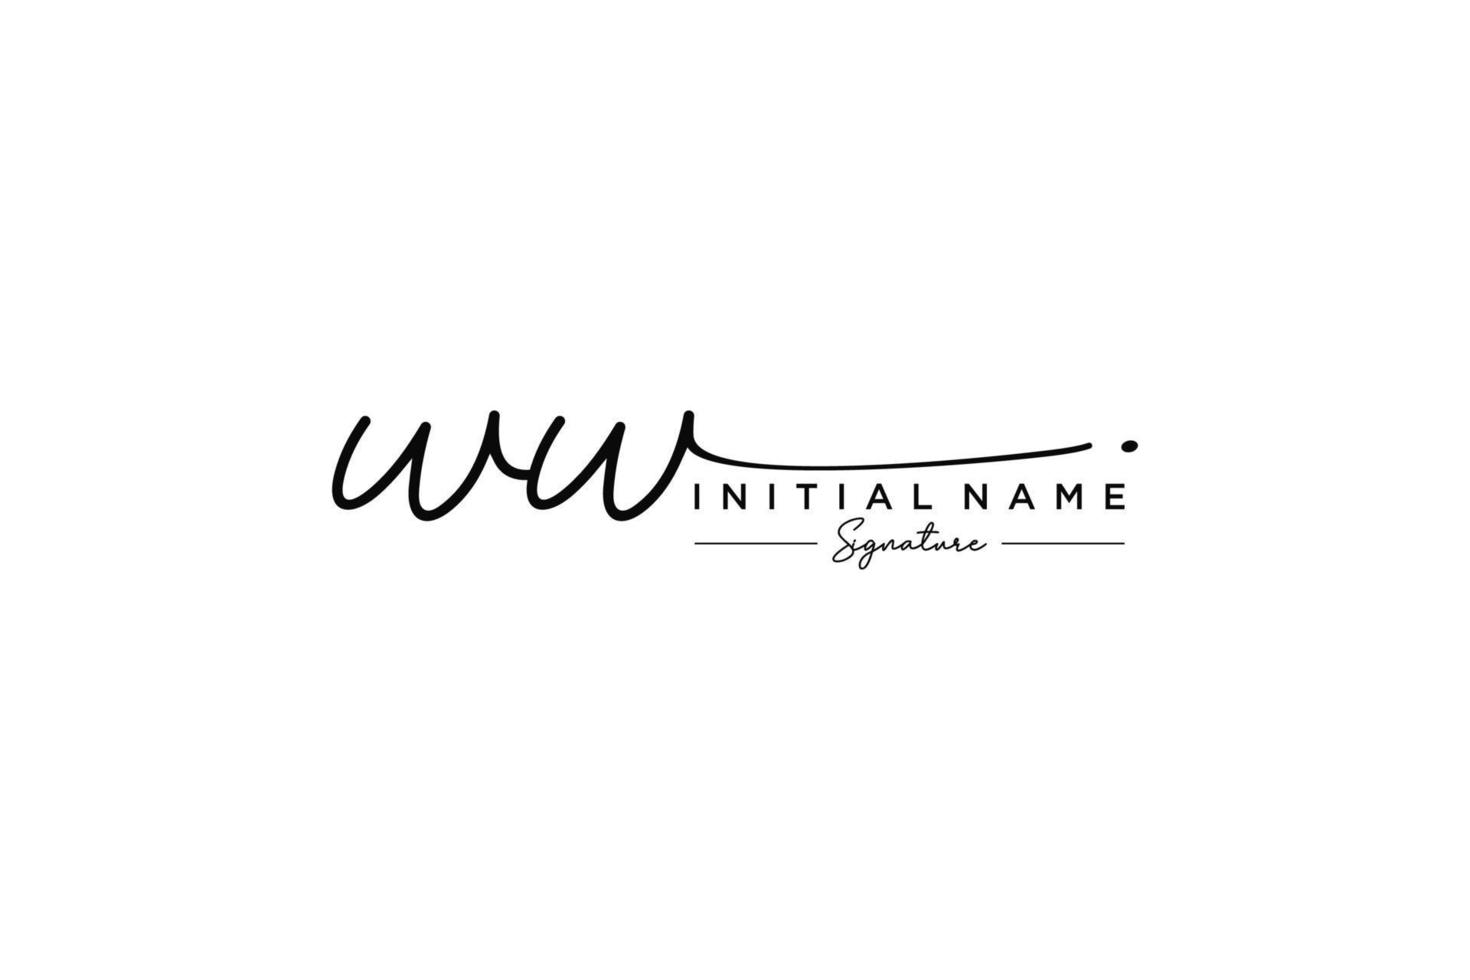 första ww signatur logotyp mall vektor. hand dragen kalligrafi text vektor illustration.